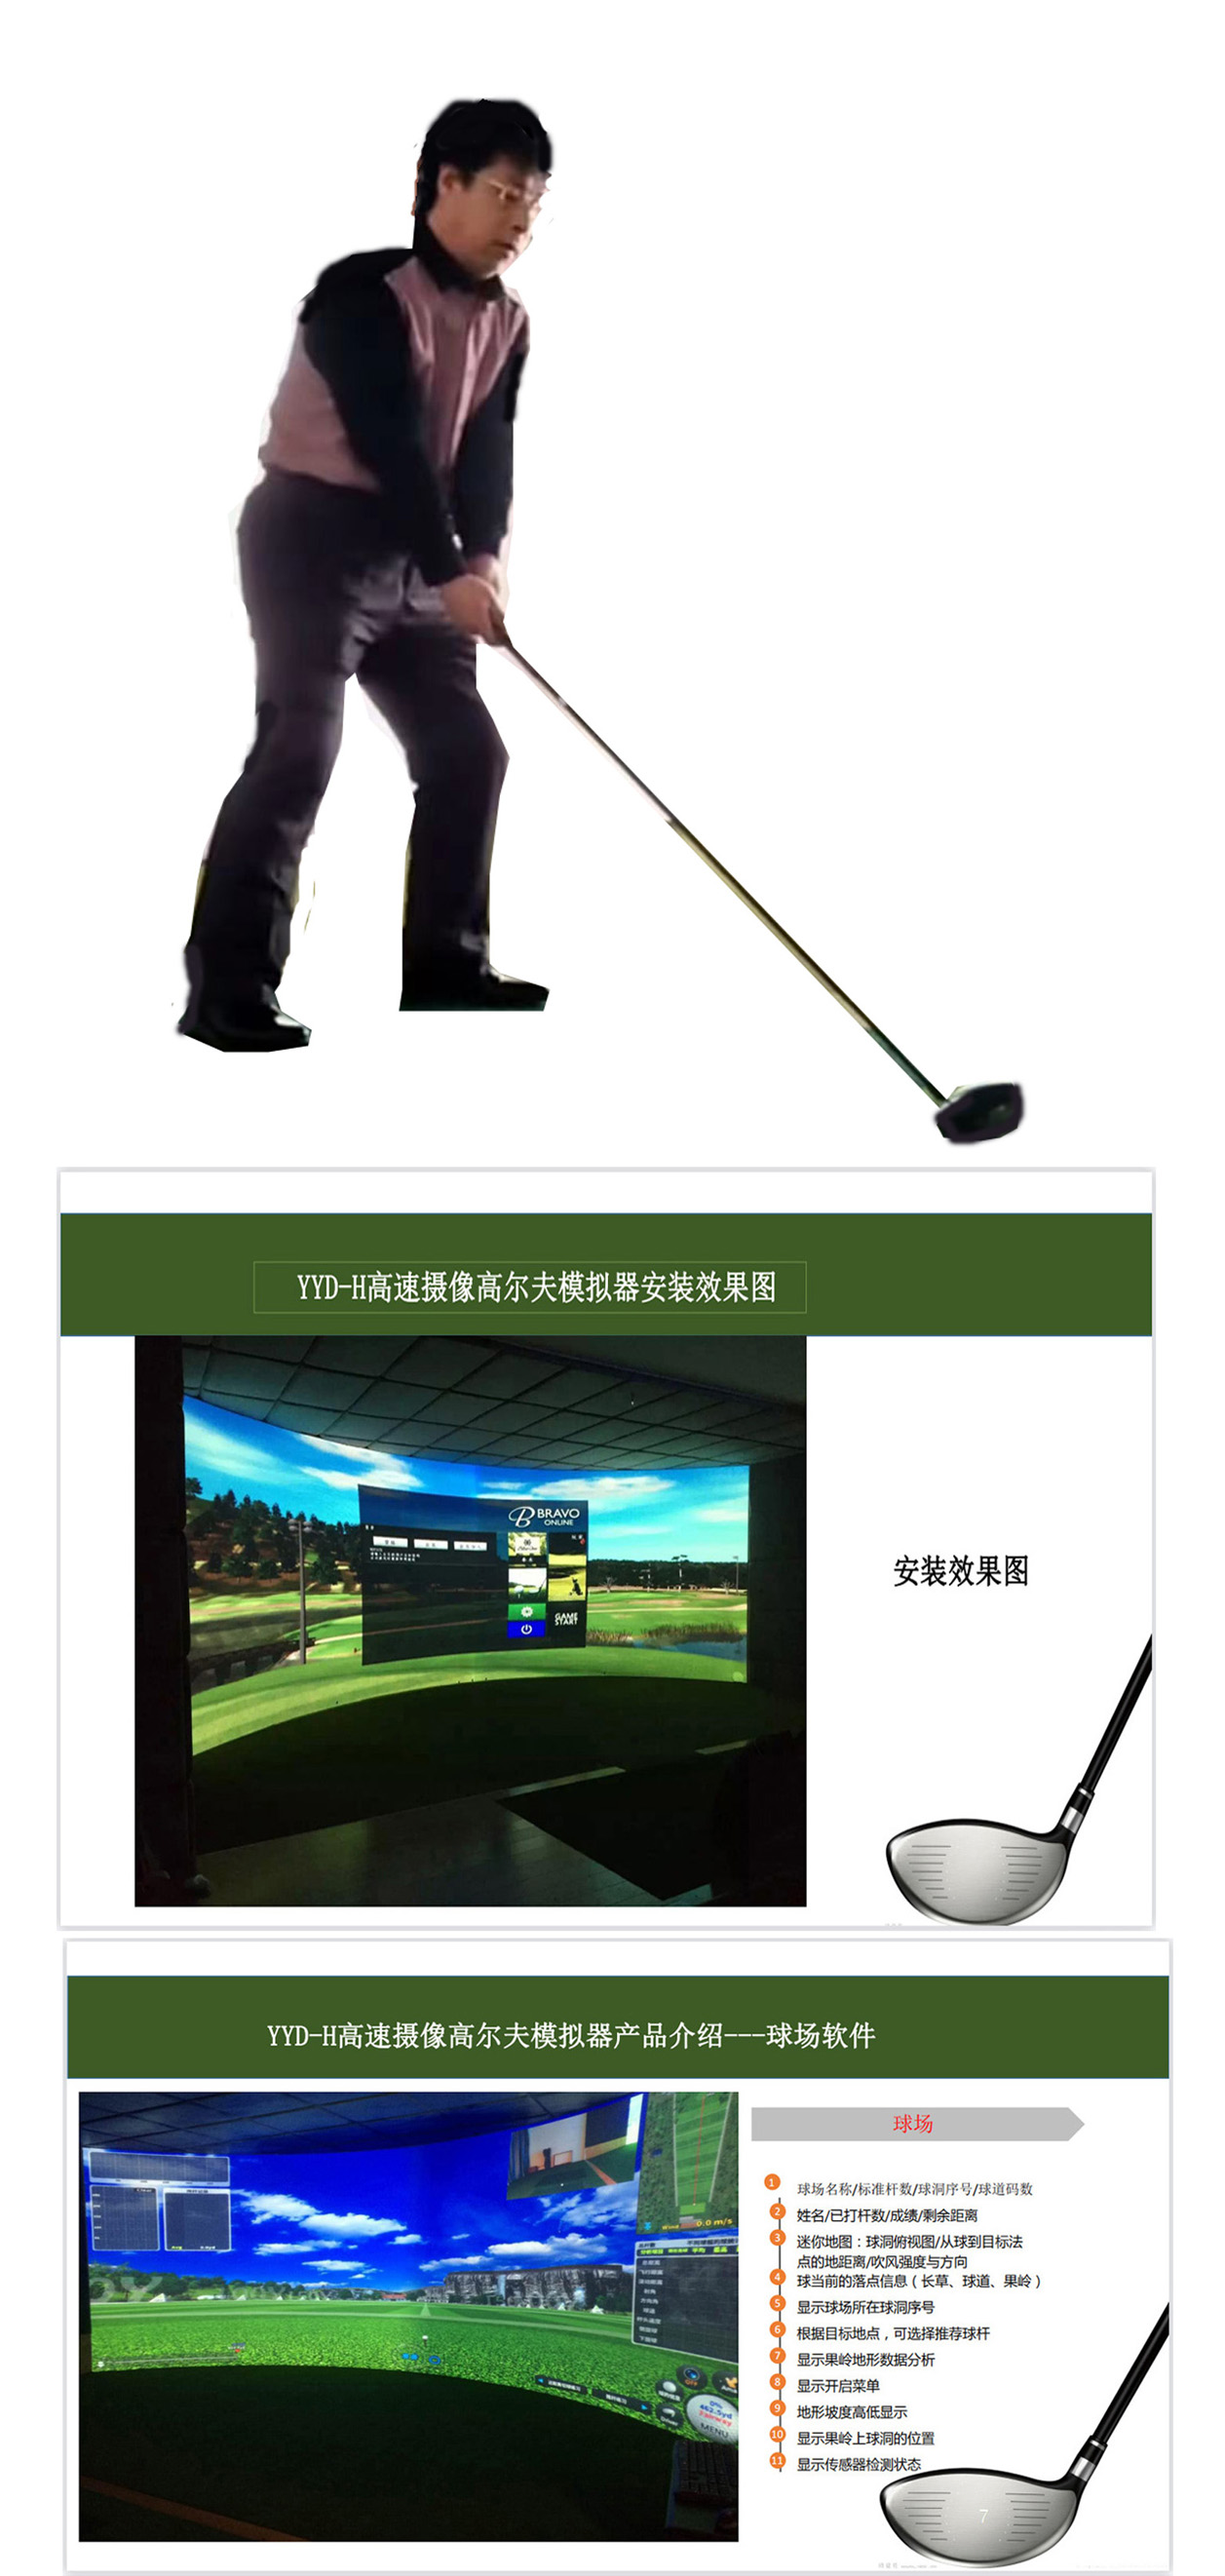 高尔夫模拟软件 82.jpg